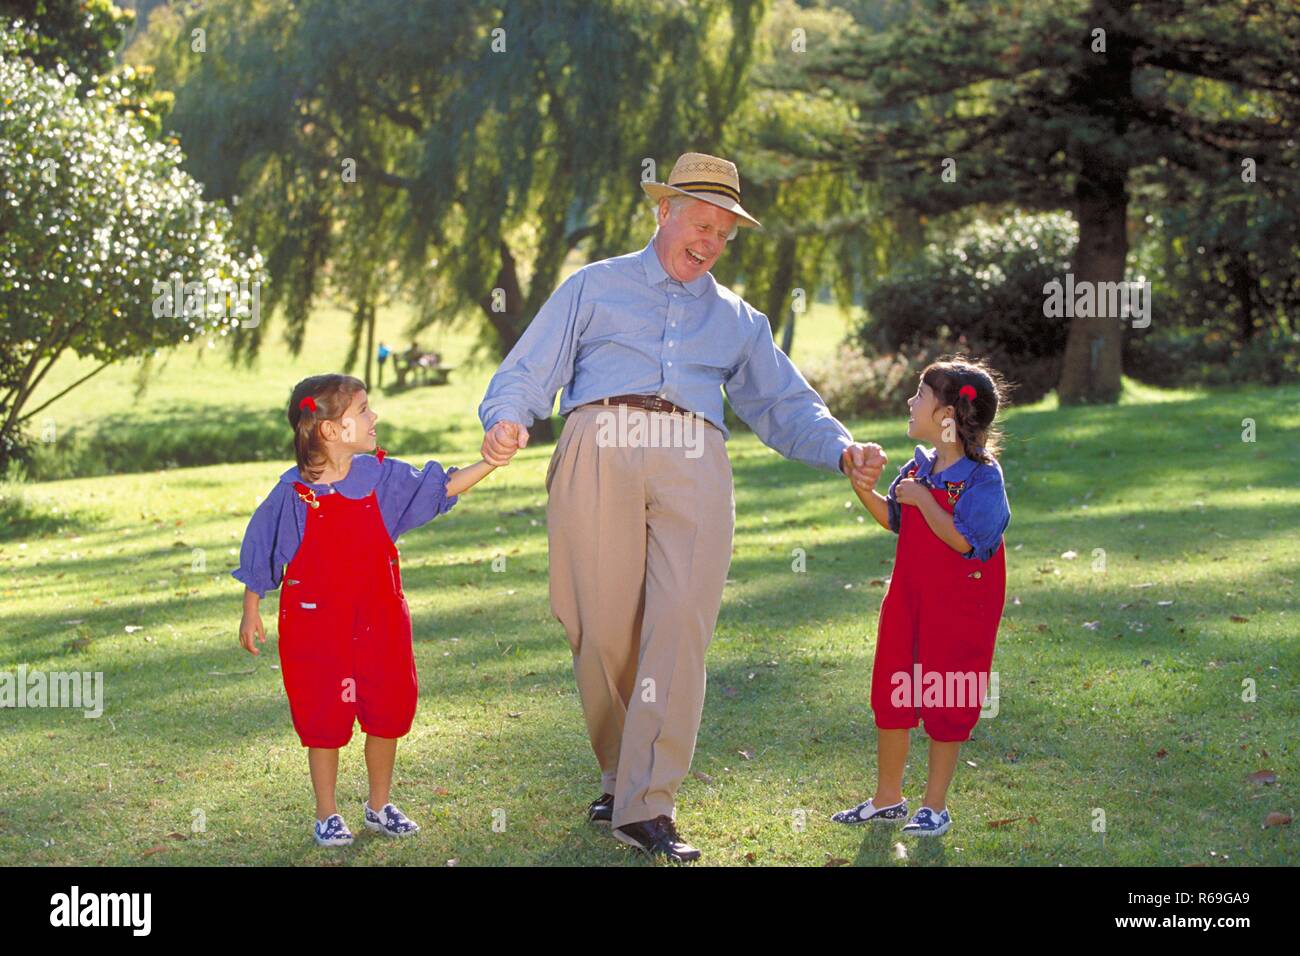 Outdoor, Parkszene, Grossvater geht mit zwei 6 Jahre alte Zwillingsmaedchen an der Hand, bekleidet mit roten Latzhosen und blauen Blusen, lachend ueber eine Wiese Stock Photo